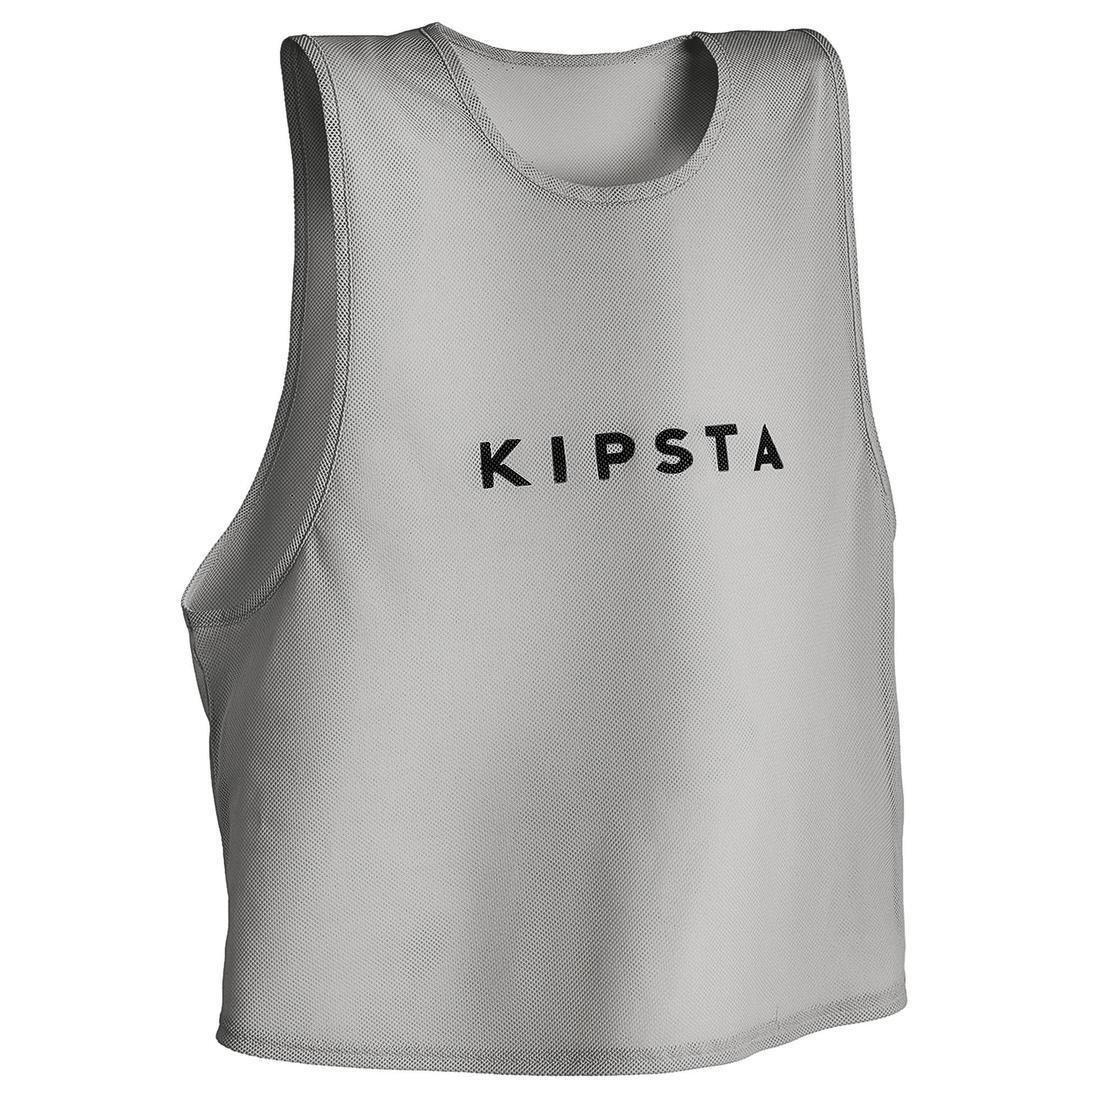 KIPSTA - Adult Bib, Caribbean Blue